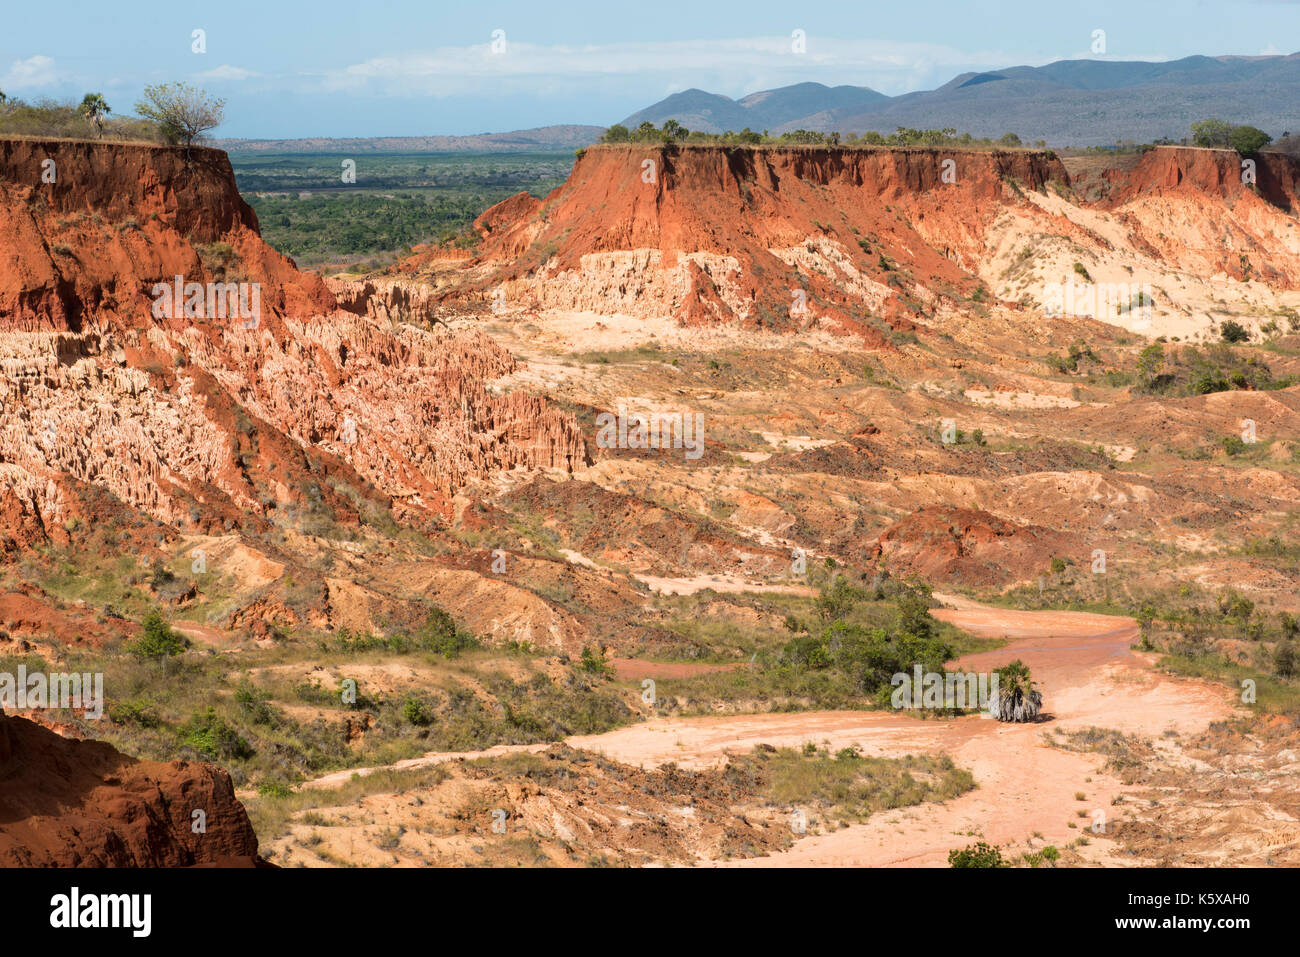 Red tsingy, near Antsiranana, Madagascar Stock Photo